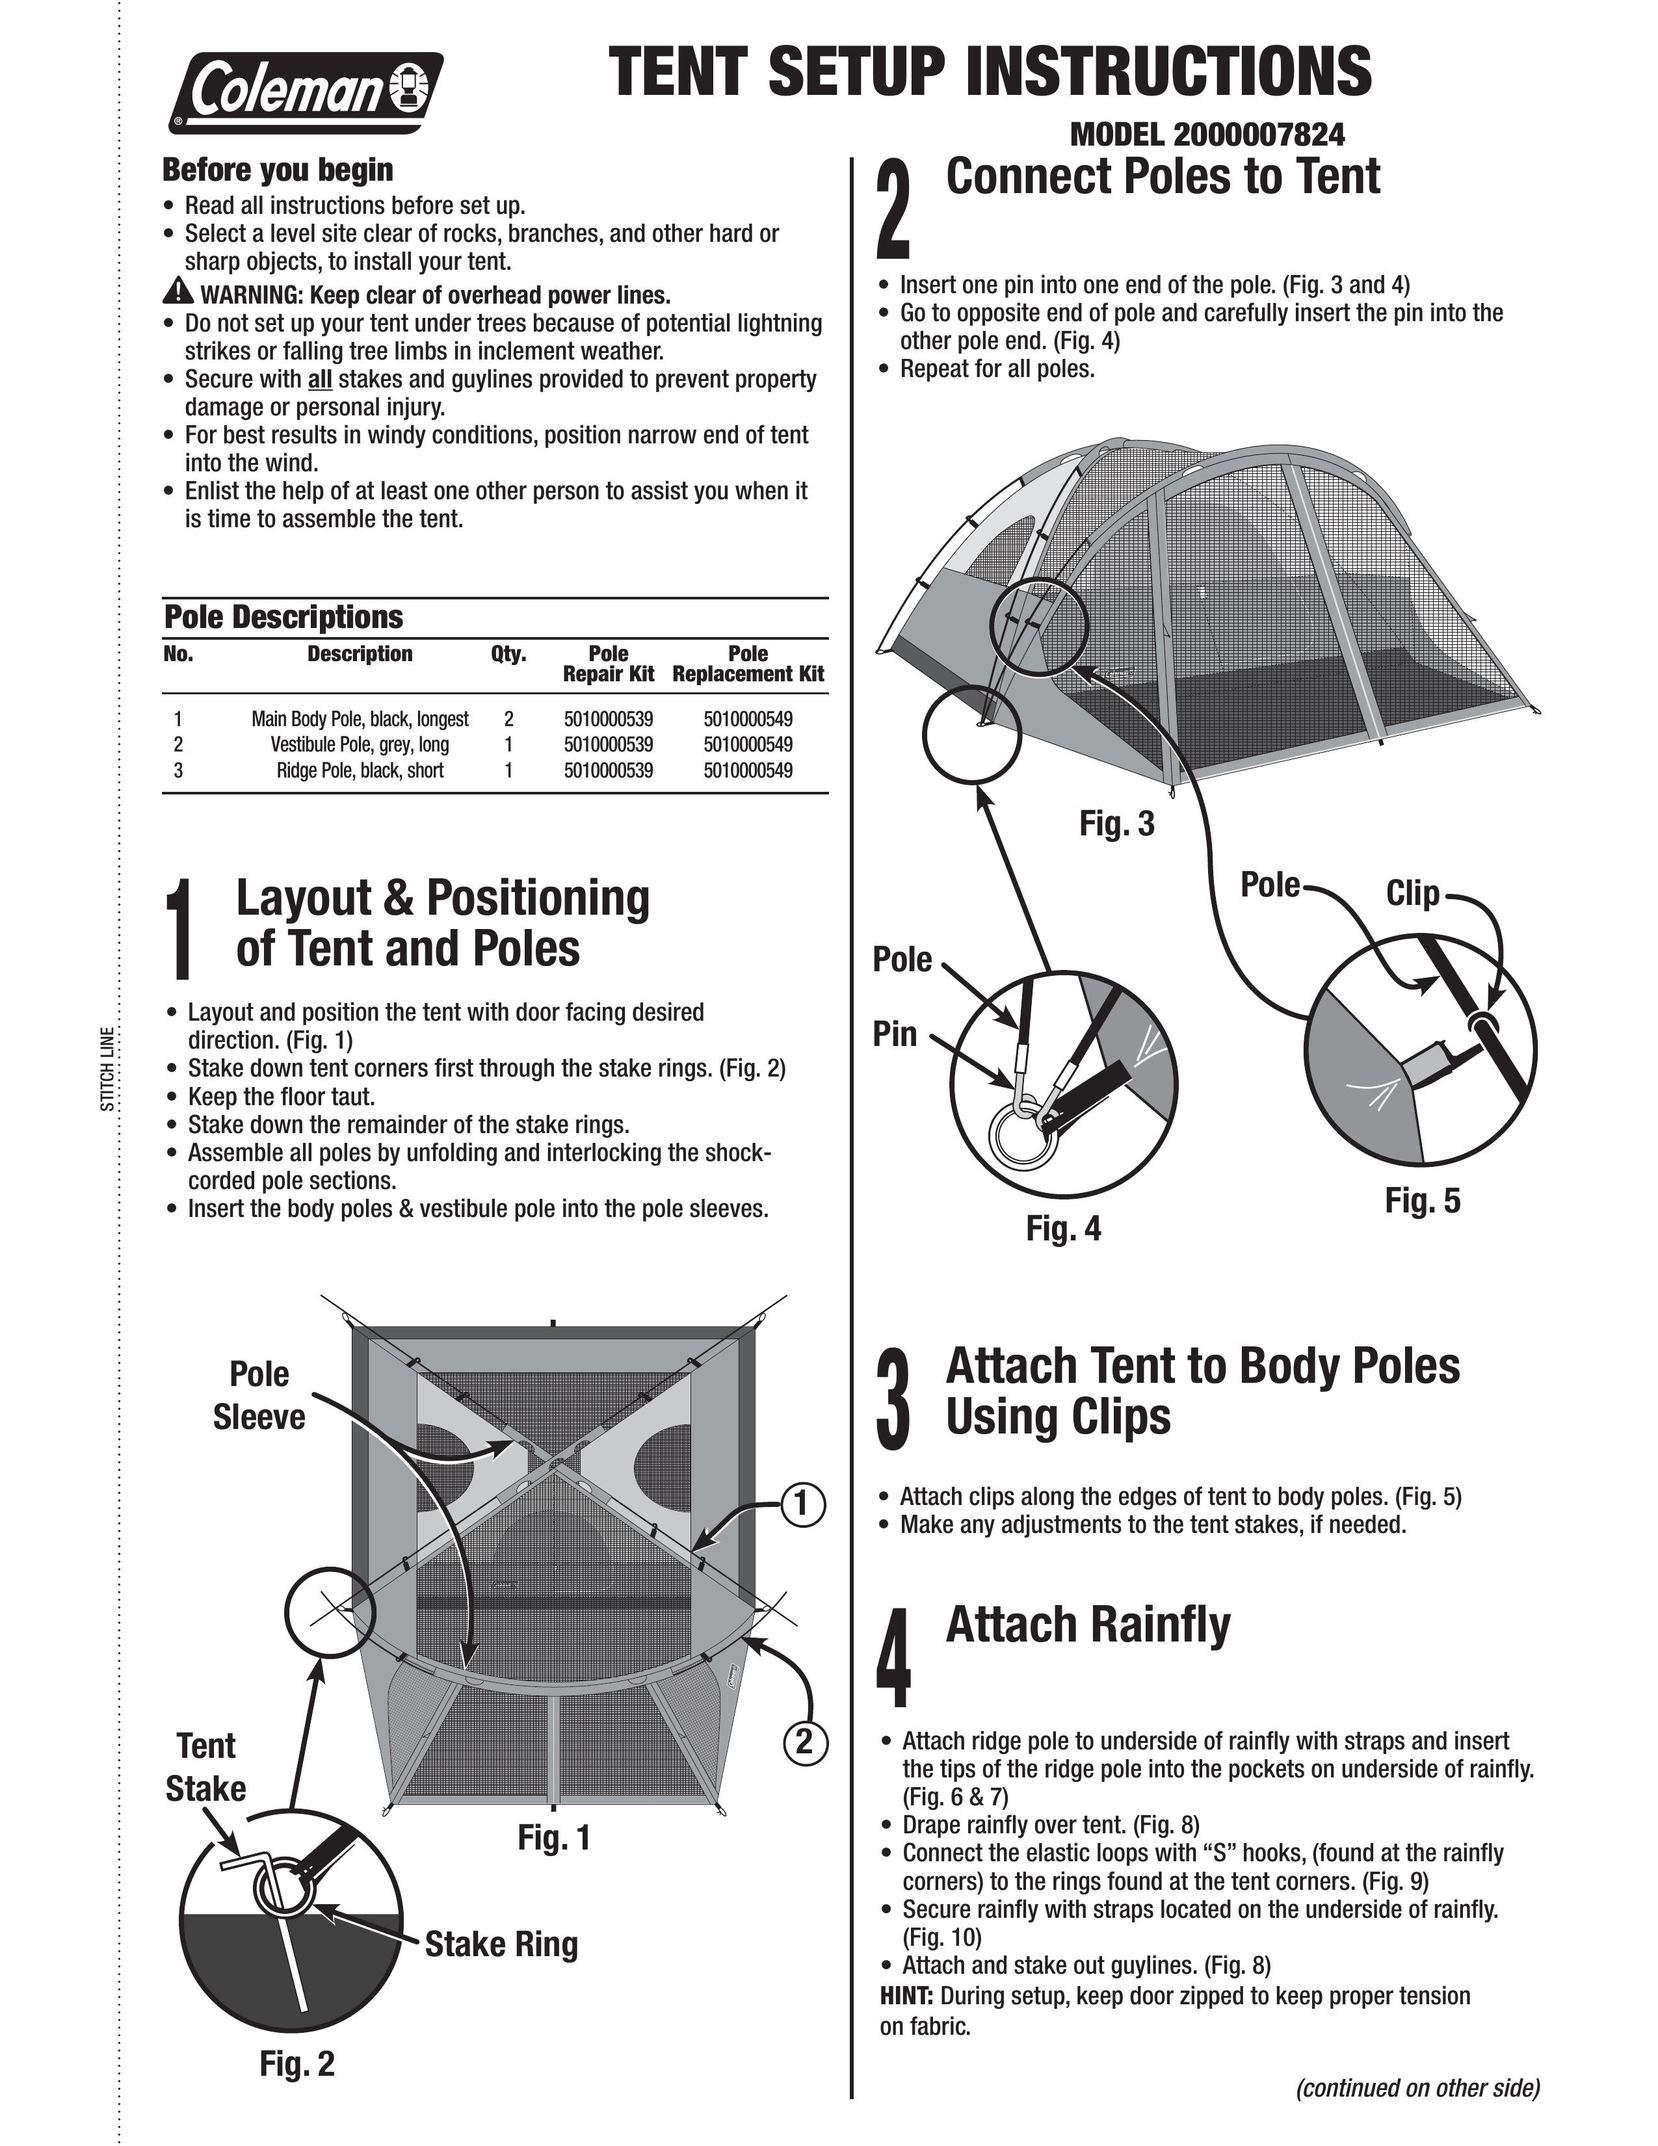 Coleman 2000007824 Tent User Manual